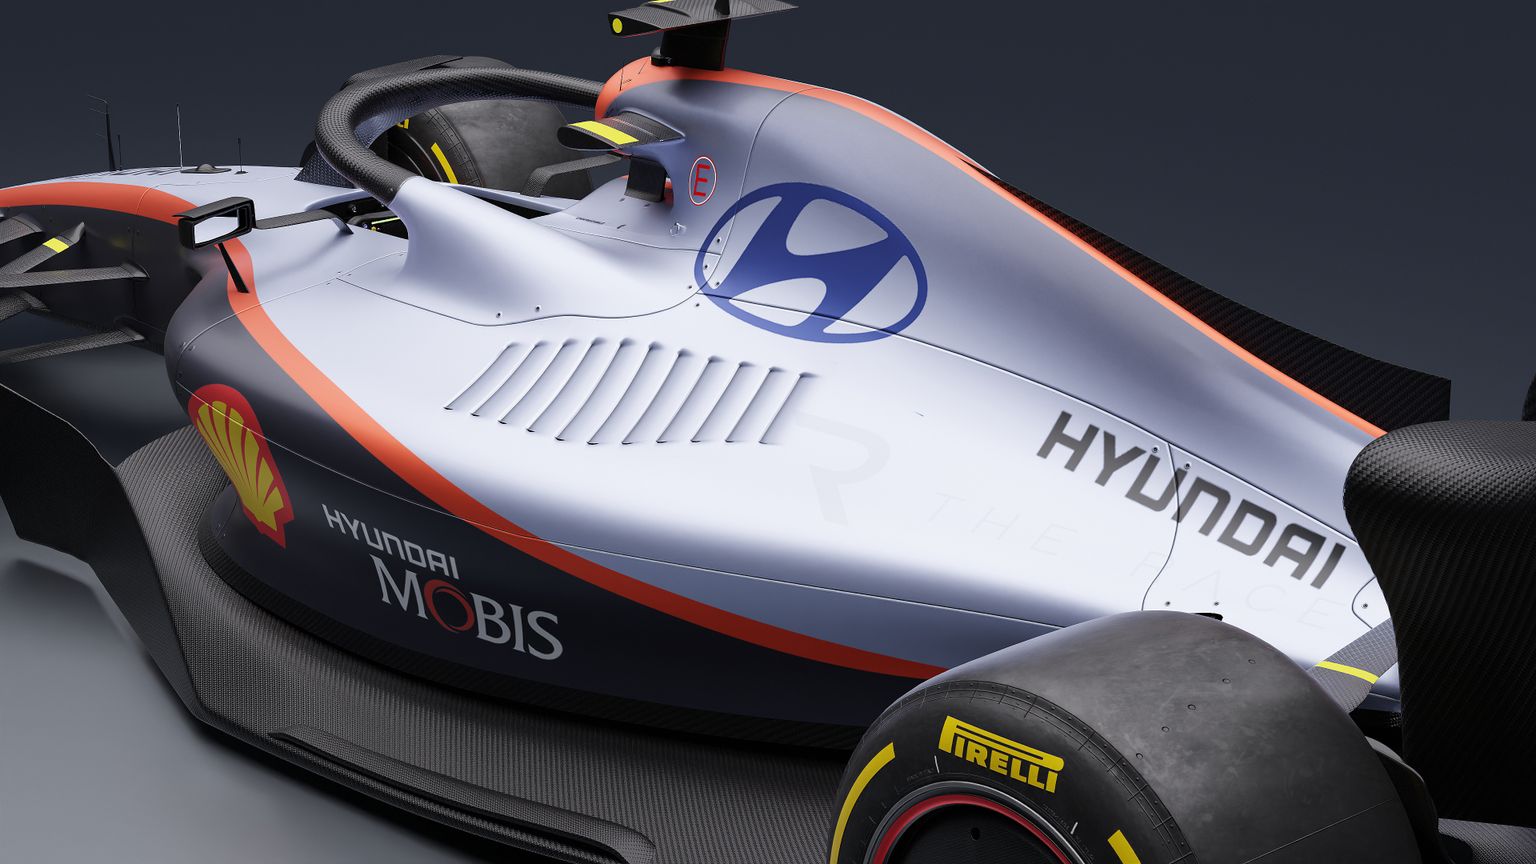 Internetis levivad kontseptsioonid võimalikust Hyundai F1-autost.